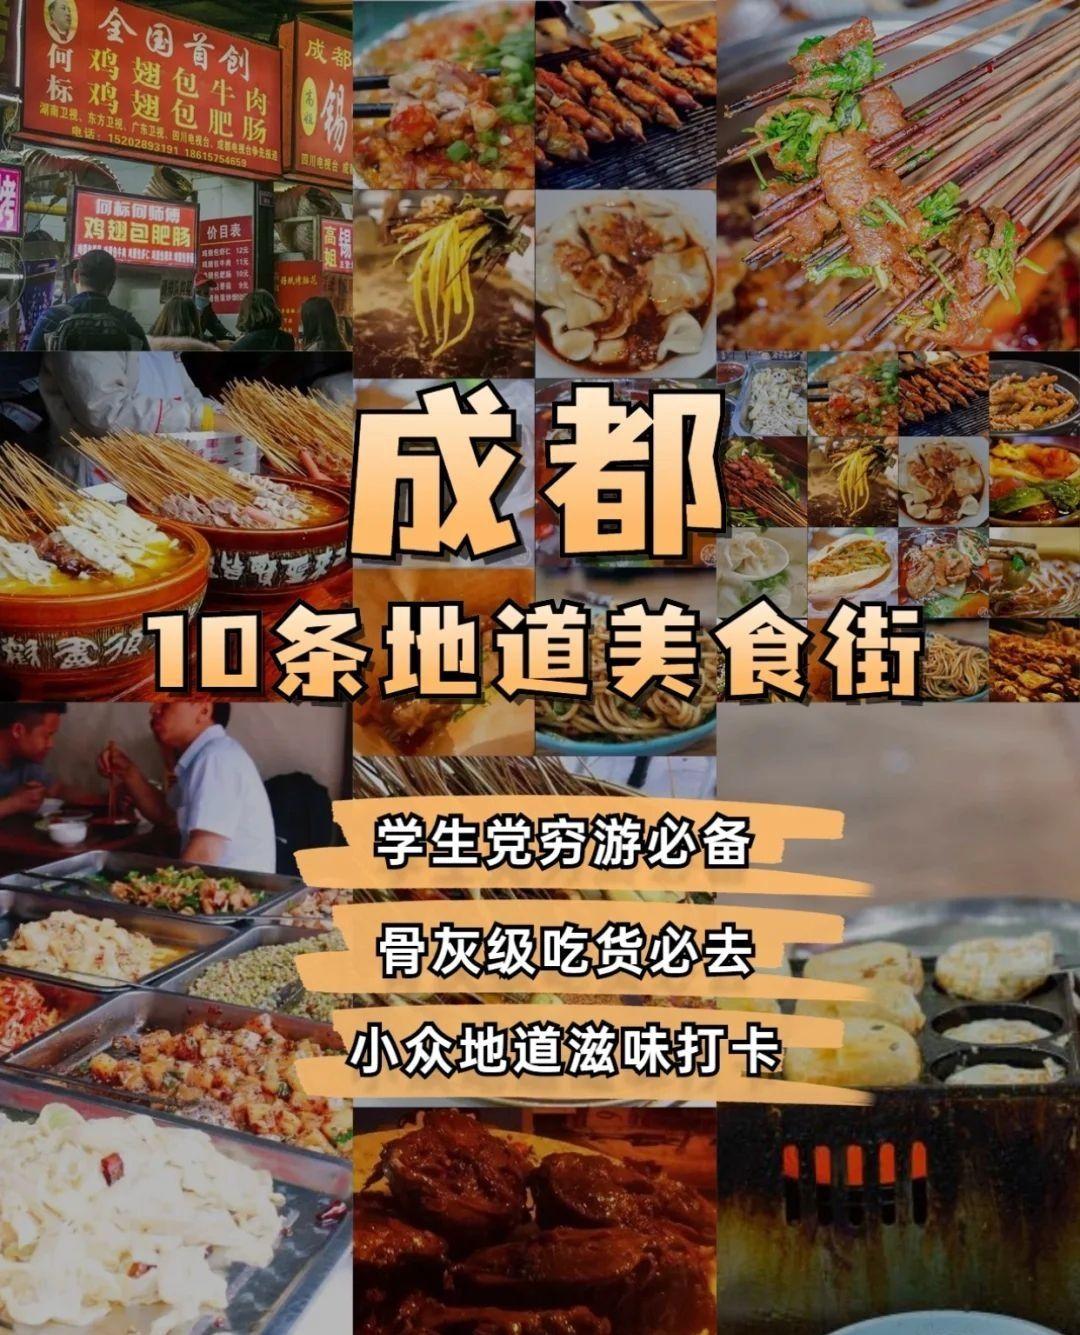 【2019成都】錦里一條街讓你吃遍成都特色美食小吃 - Mobile01